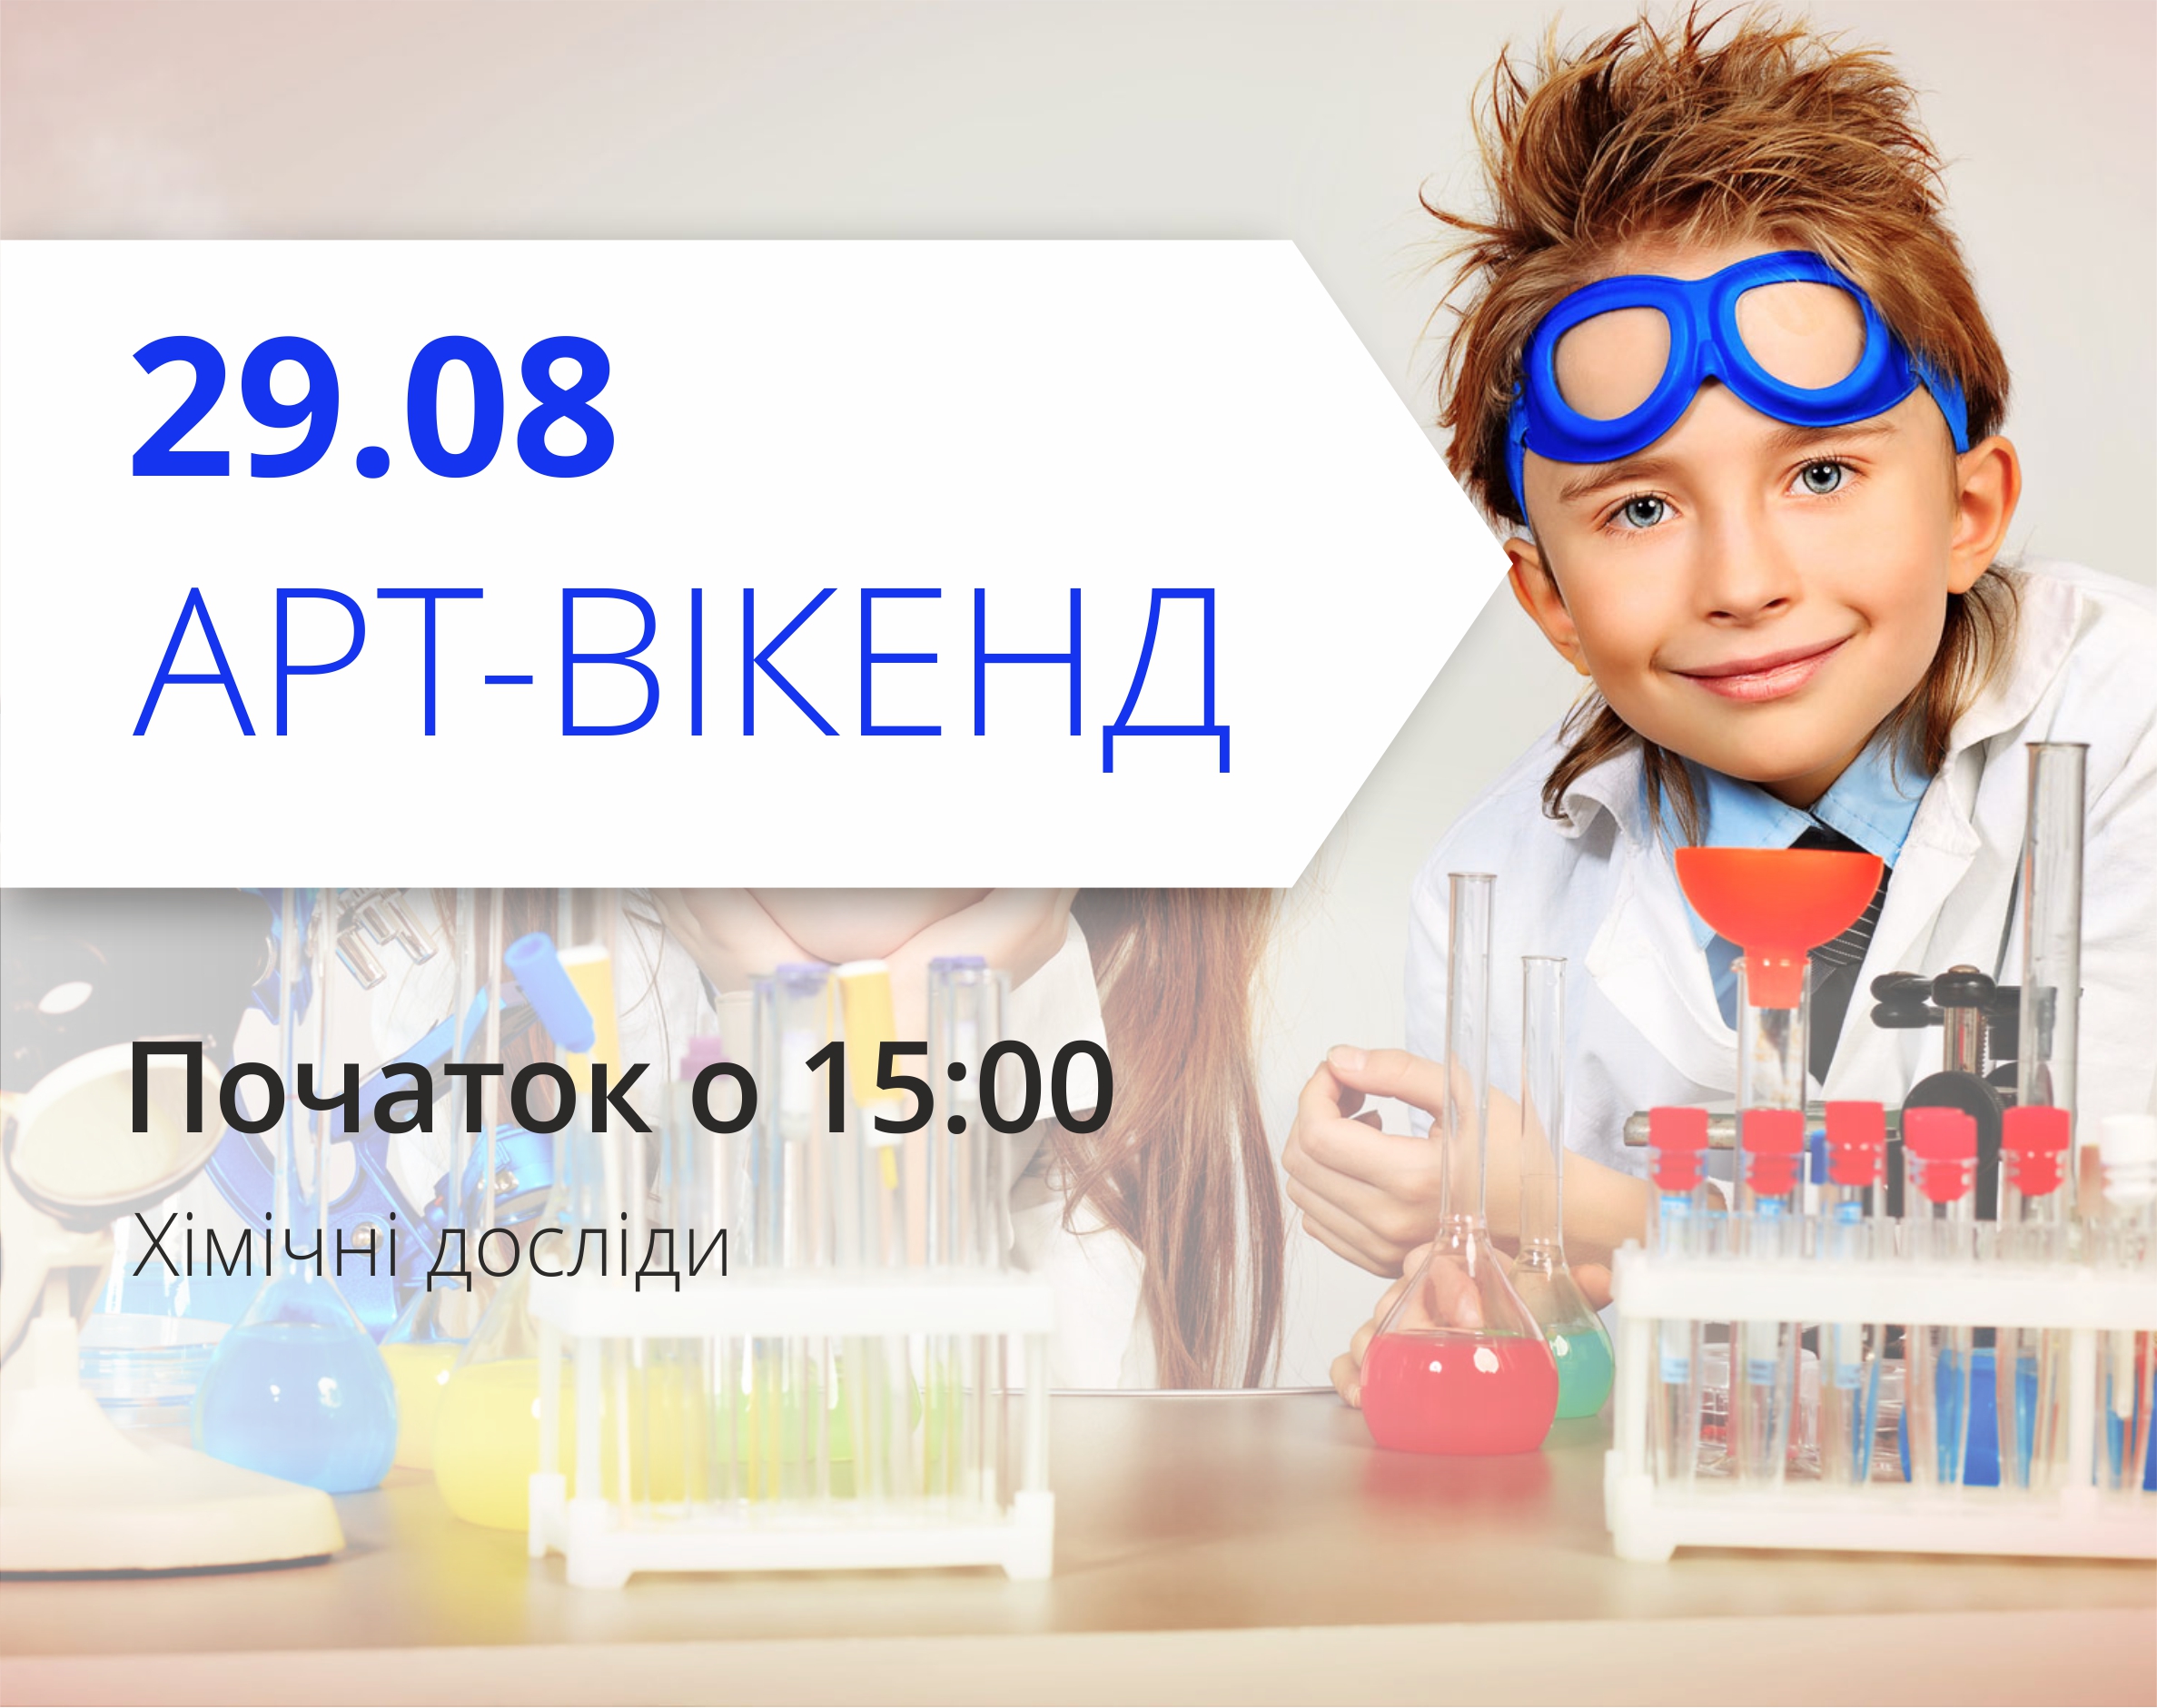 ТРЦ Любава запрошує відвідати хімічні досліди 